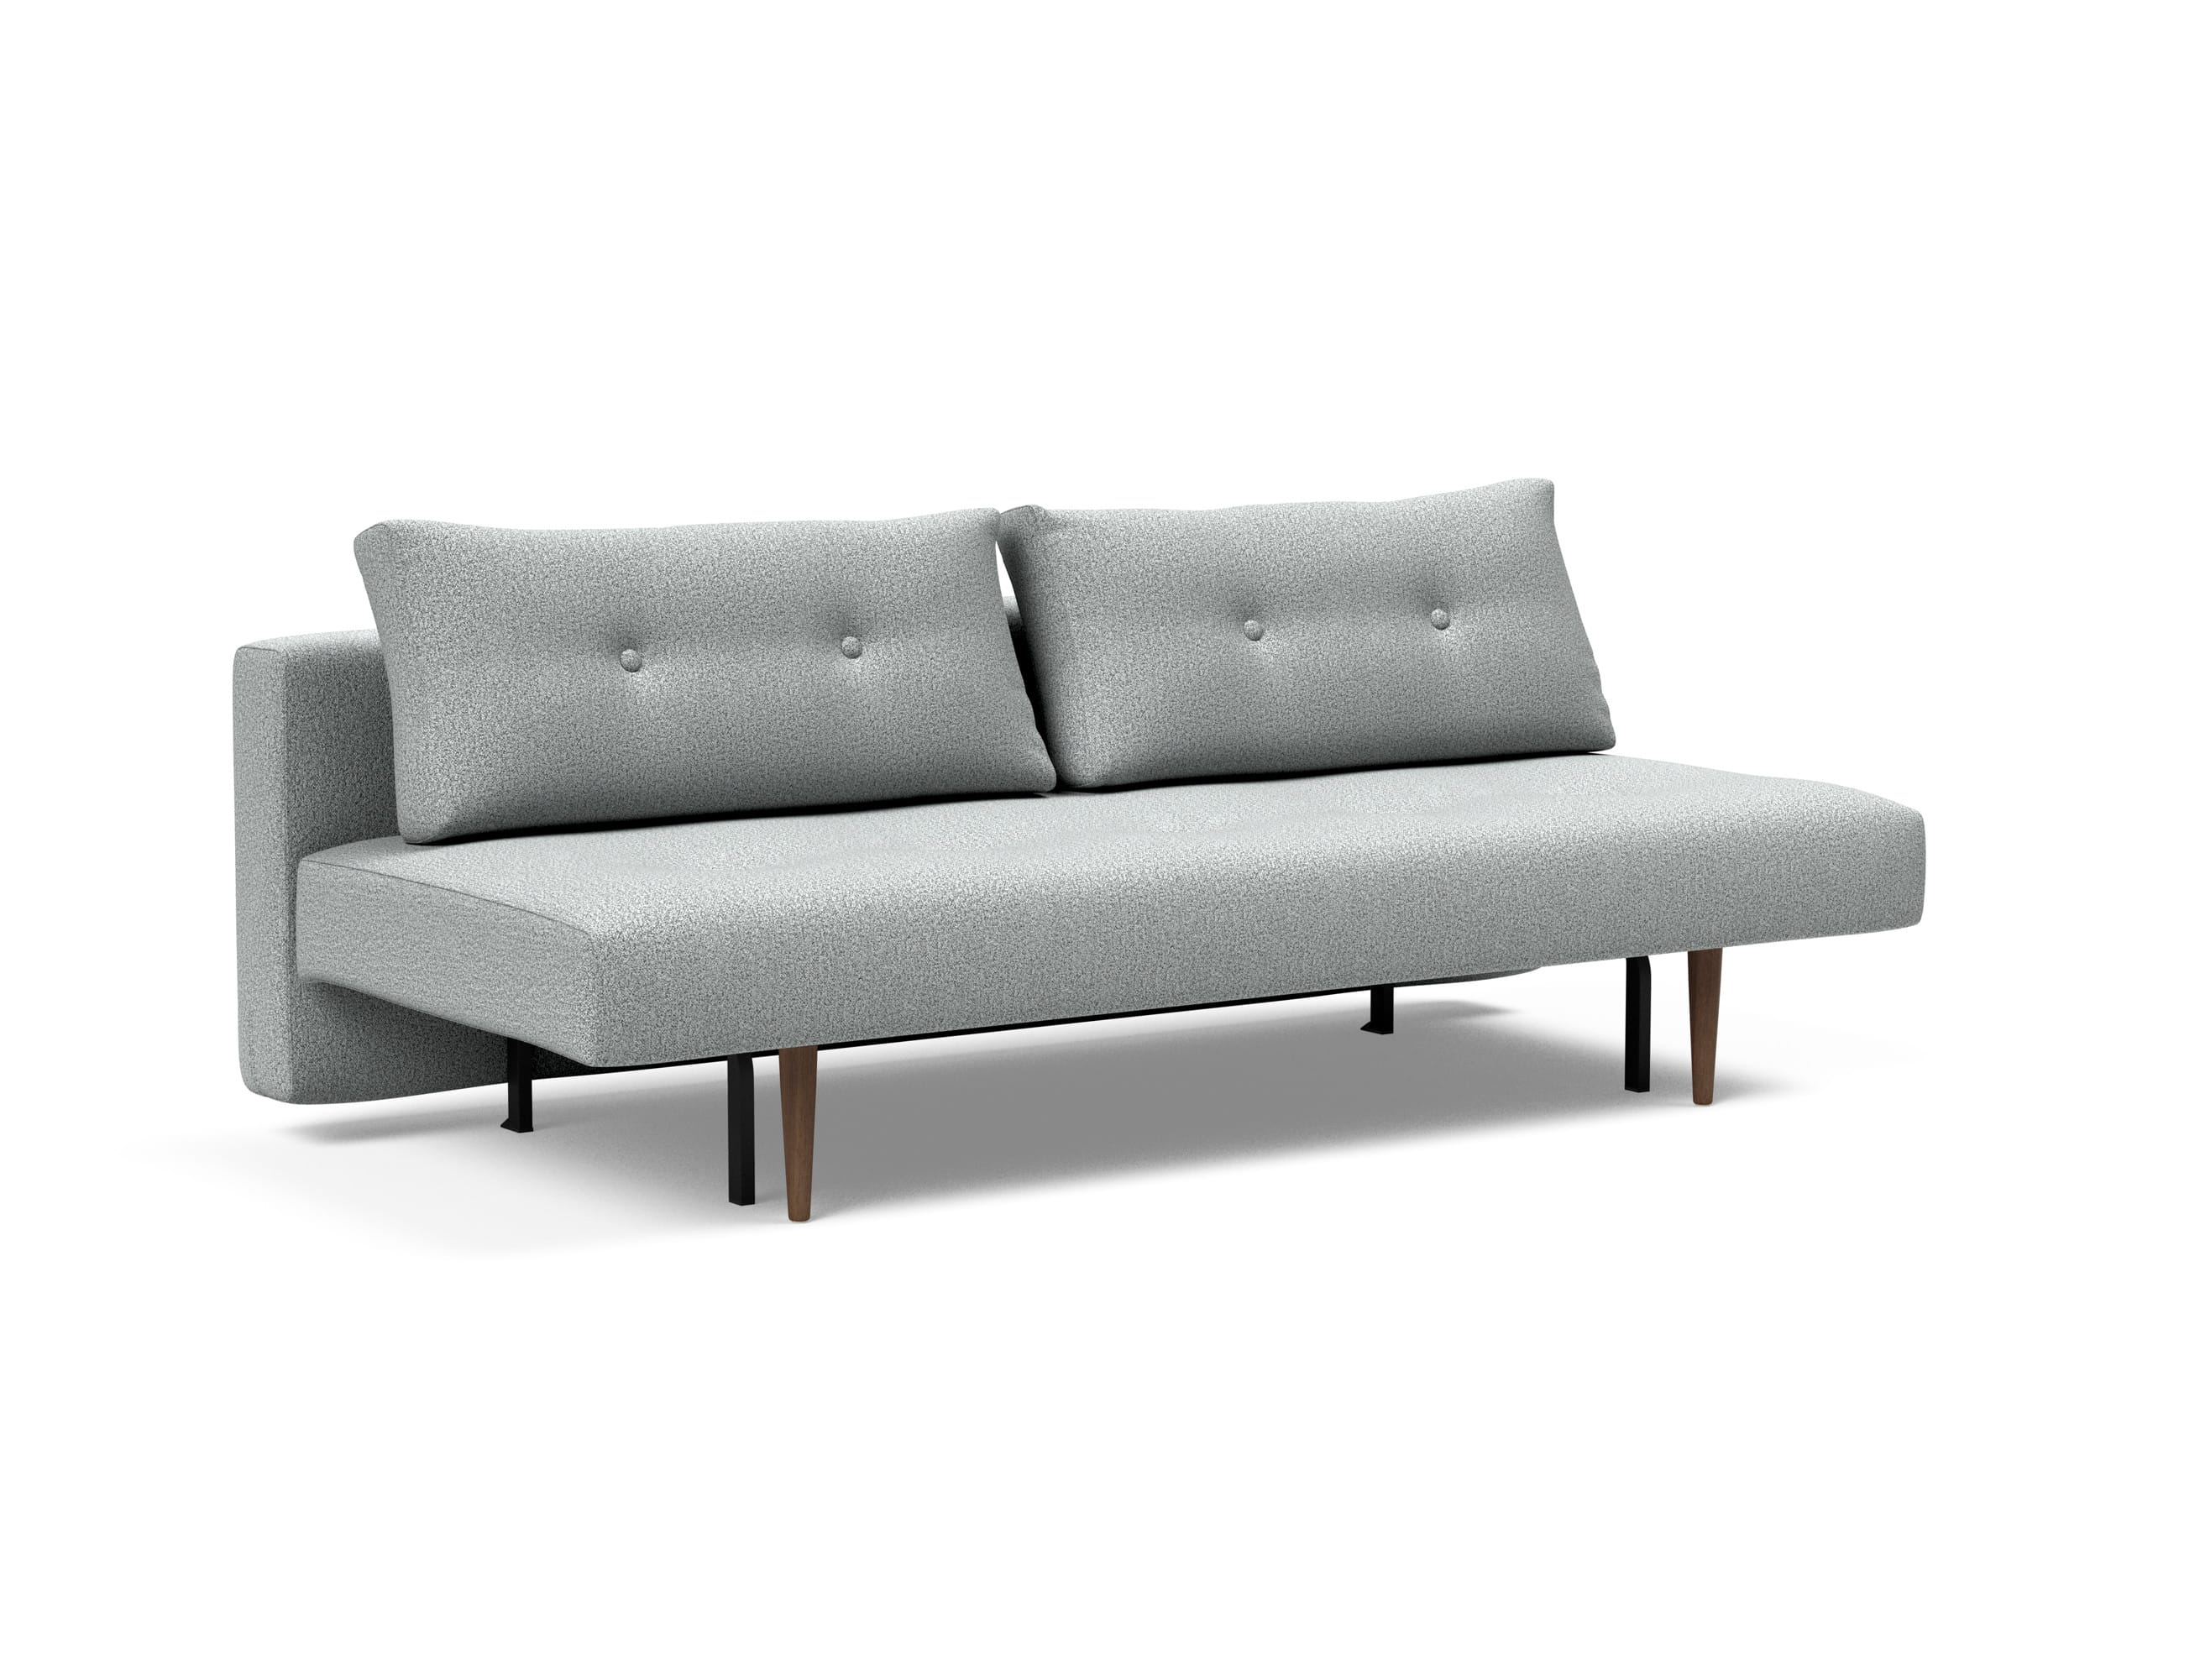 Recast Plus Sofa Bed (Full Size) Melange Light Innovation